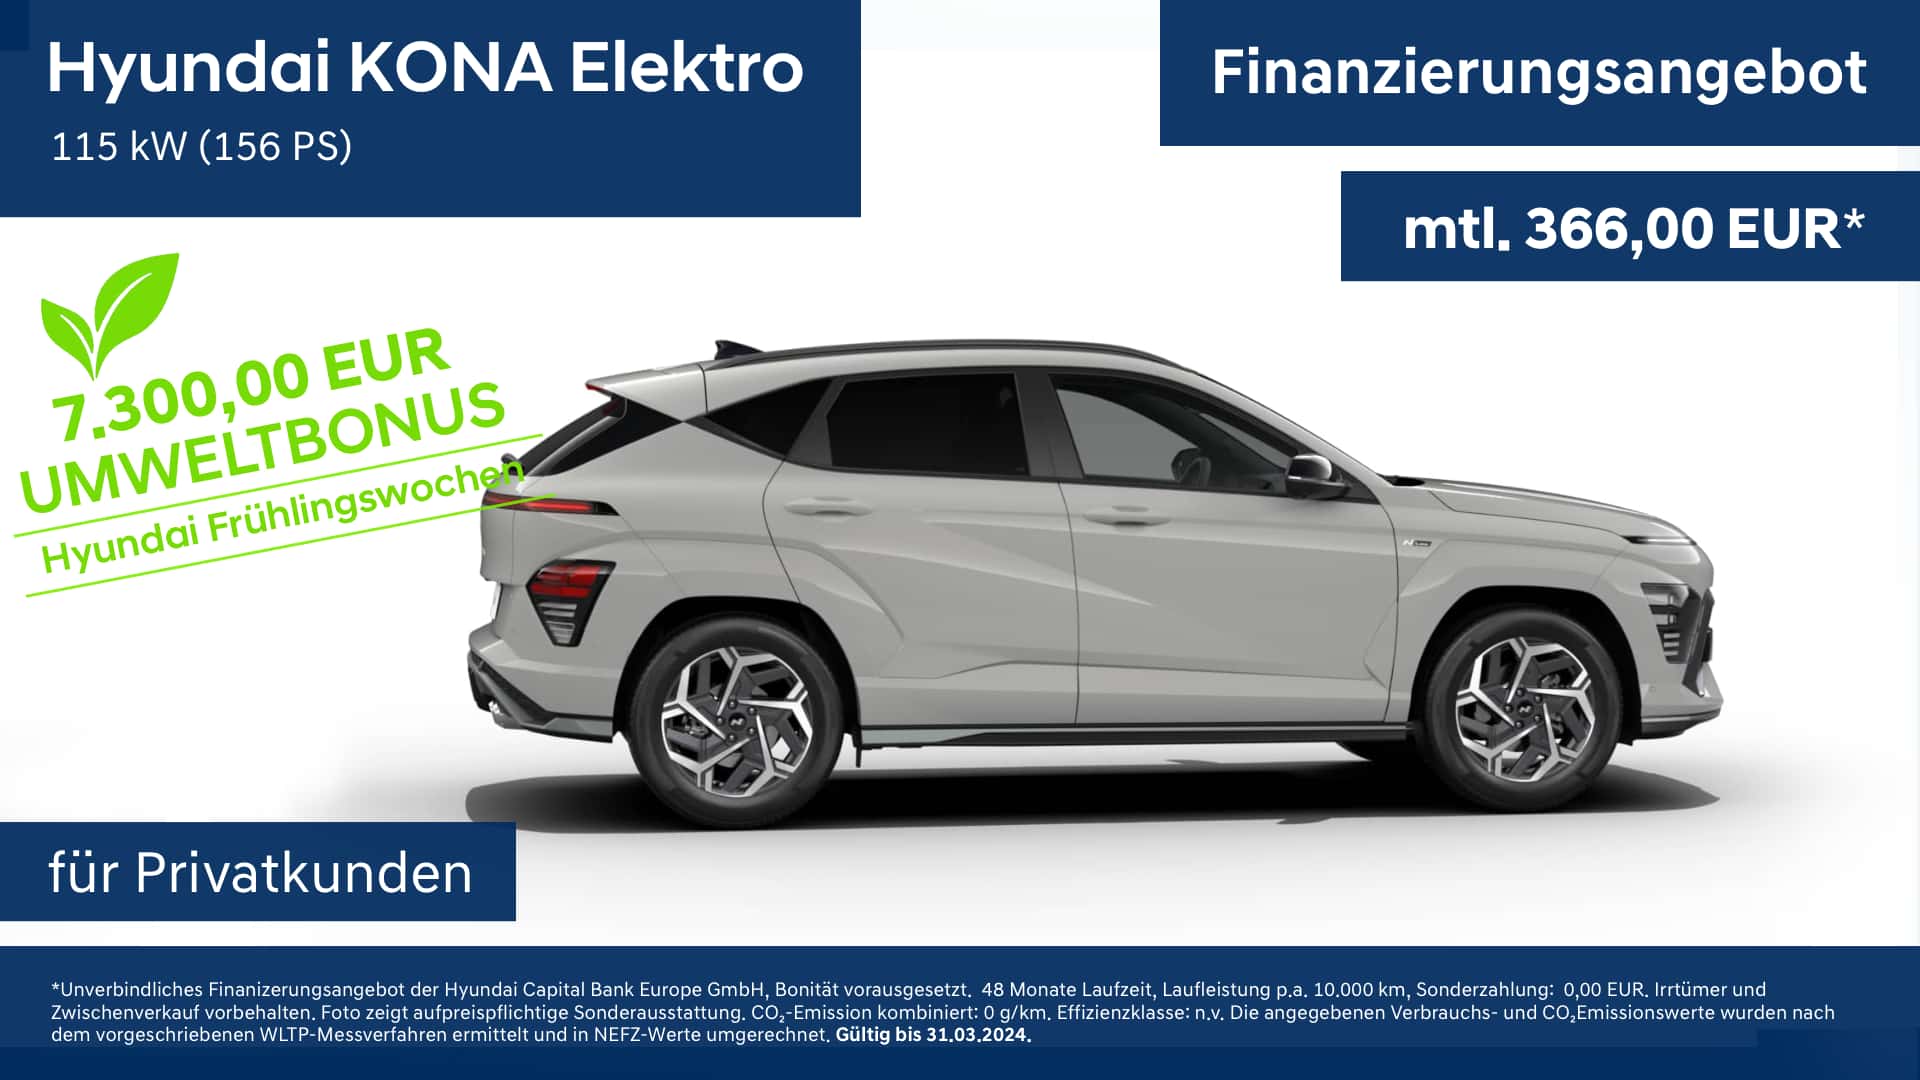 Hyundai KONA Elektro Finanzierungsangebot für Privatkunden mit Umweltbonus